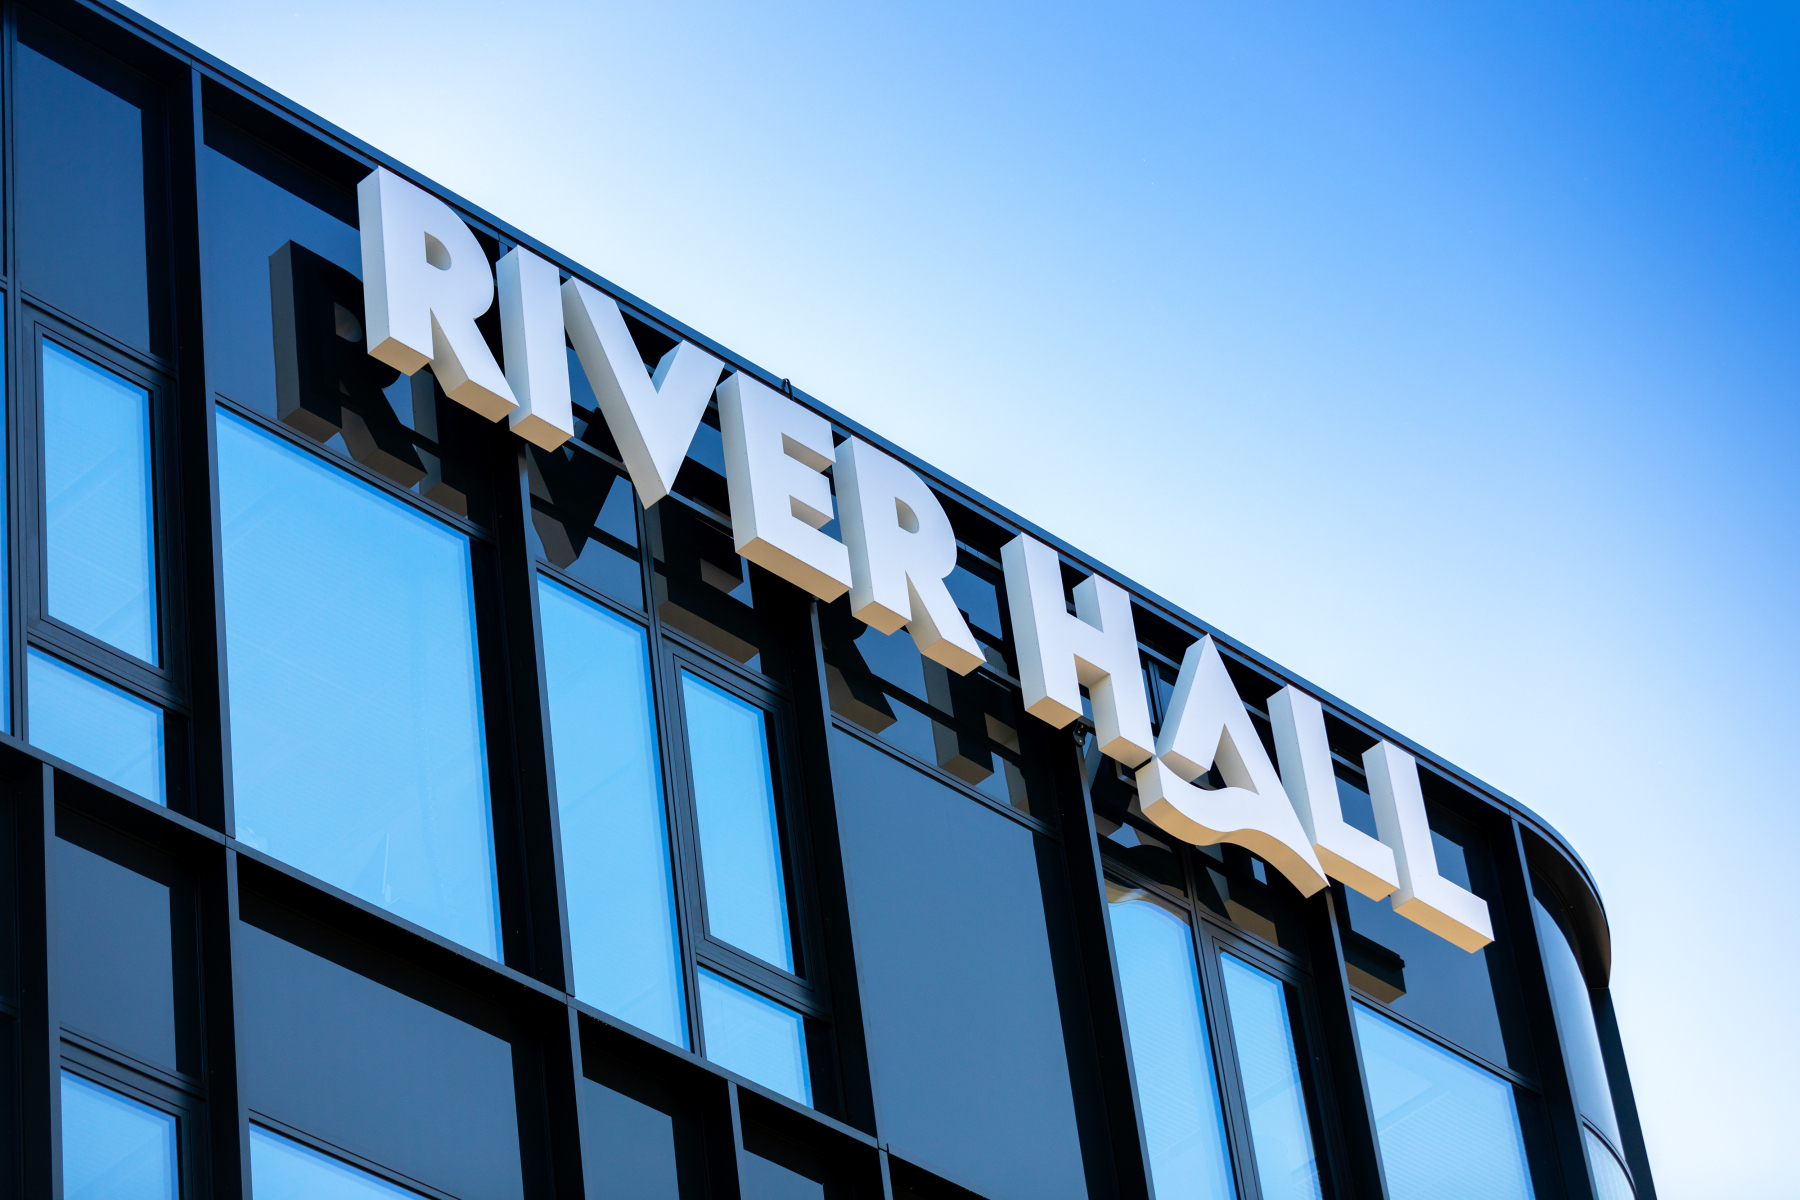 River_Hall_5